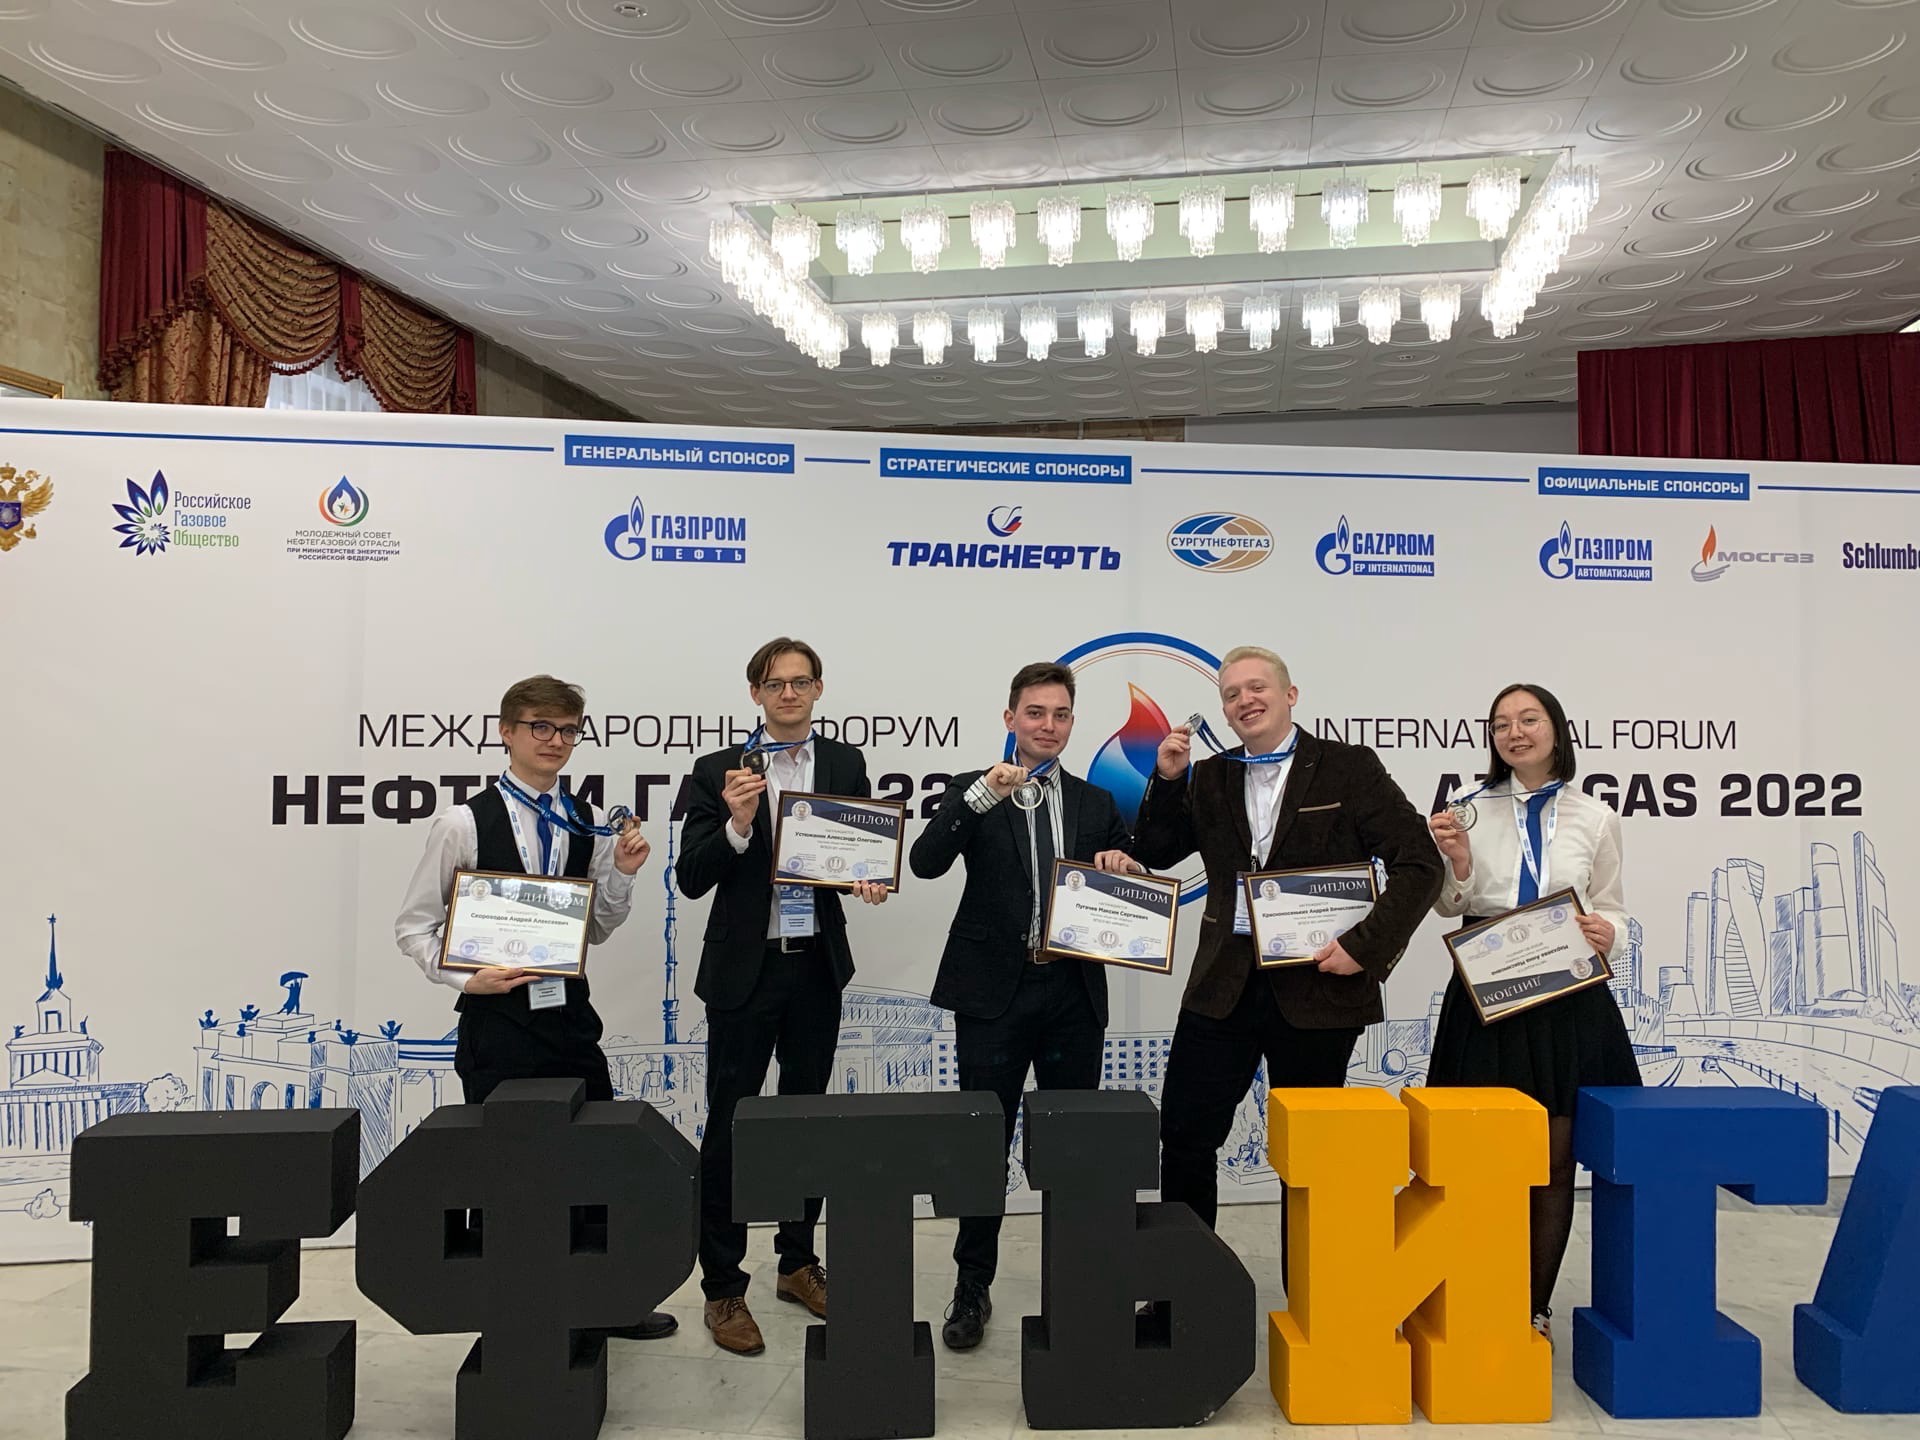 Научное общество «Карбон» занял второе место в VI Всероссийском конкурсе студенческих объединений нефтегазовой отрасли России